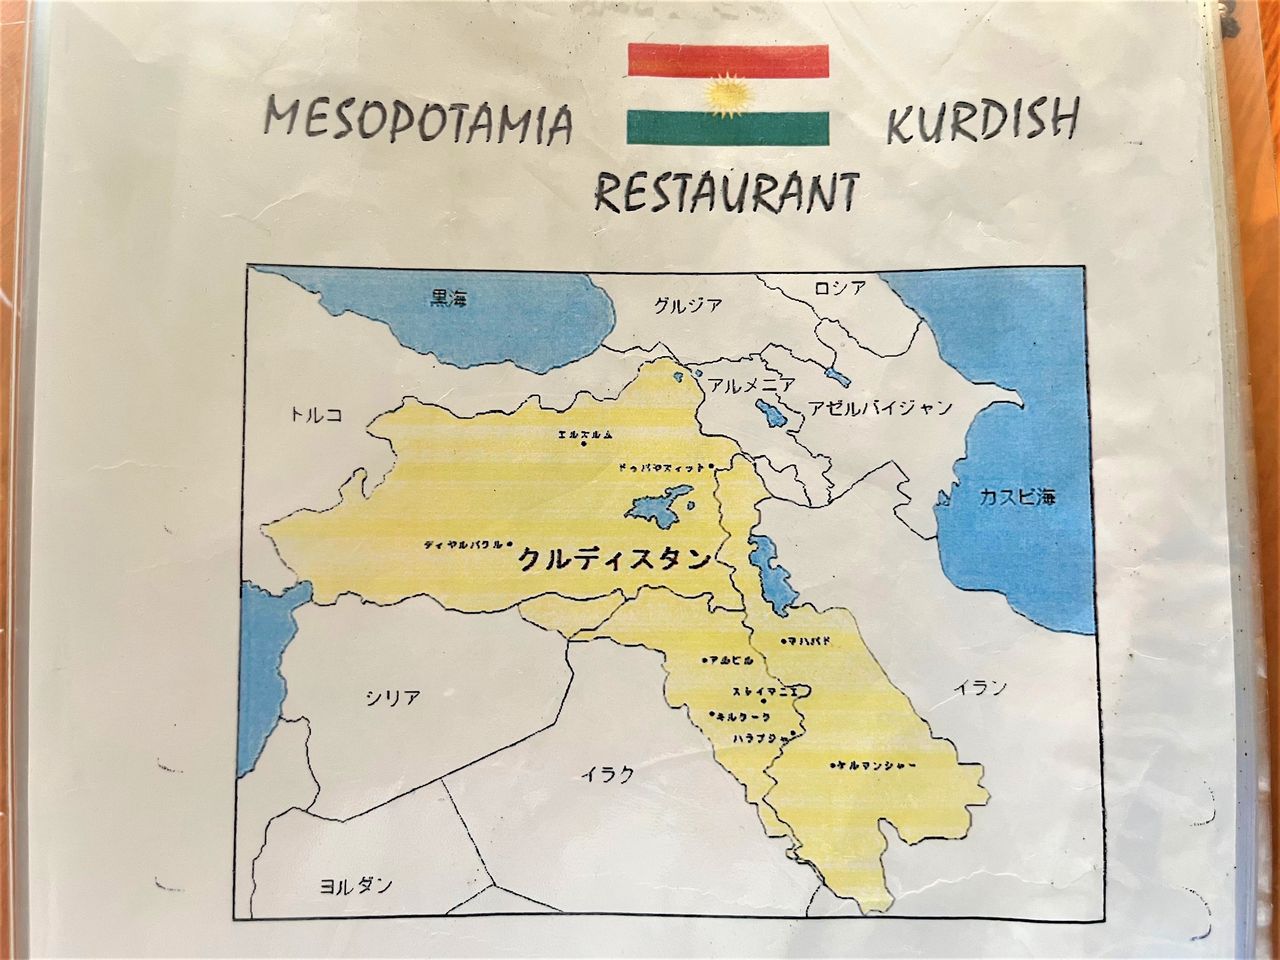 بالإضافة إلى الطعام، تحتوي القائمة أيضًا على خريطة لمناطق كردستان ومعلومات أساسية عن المنطقة.